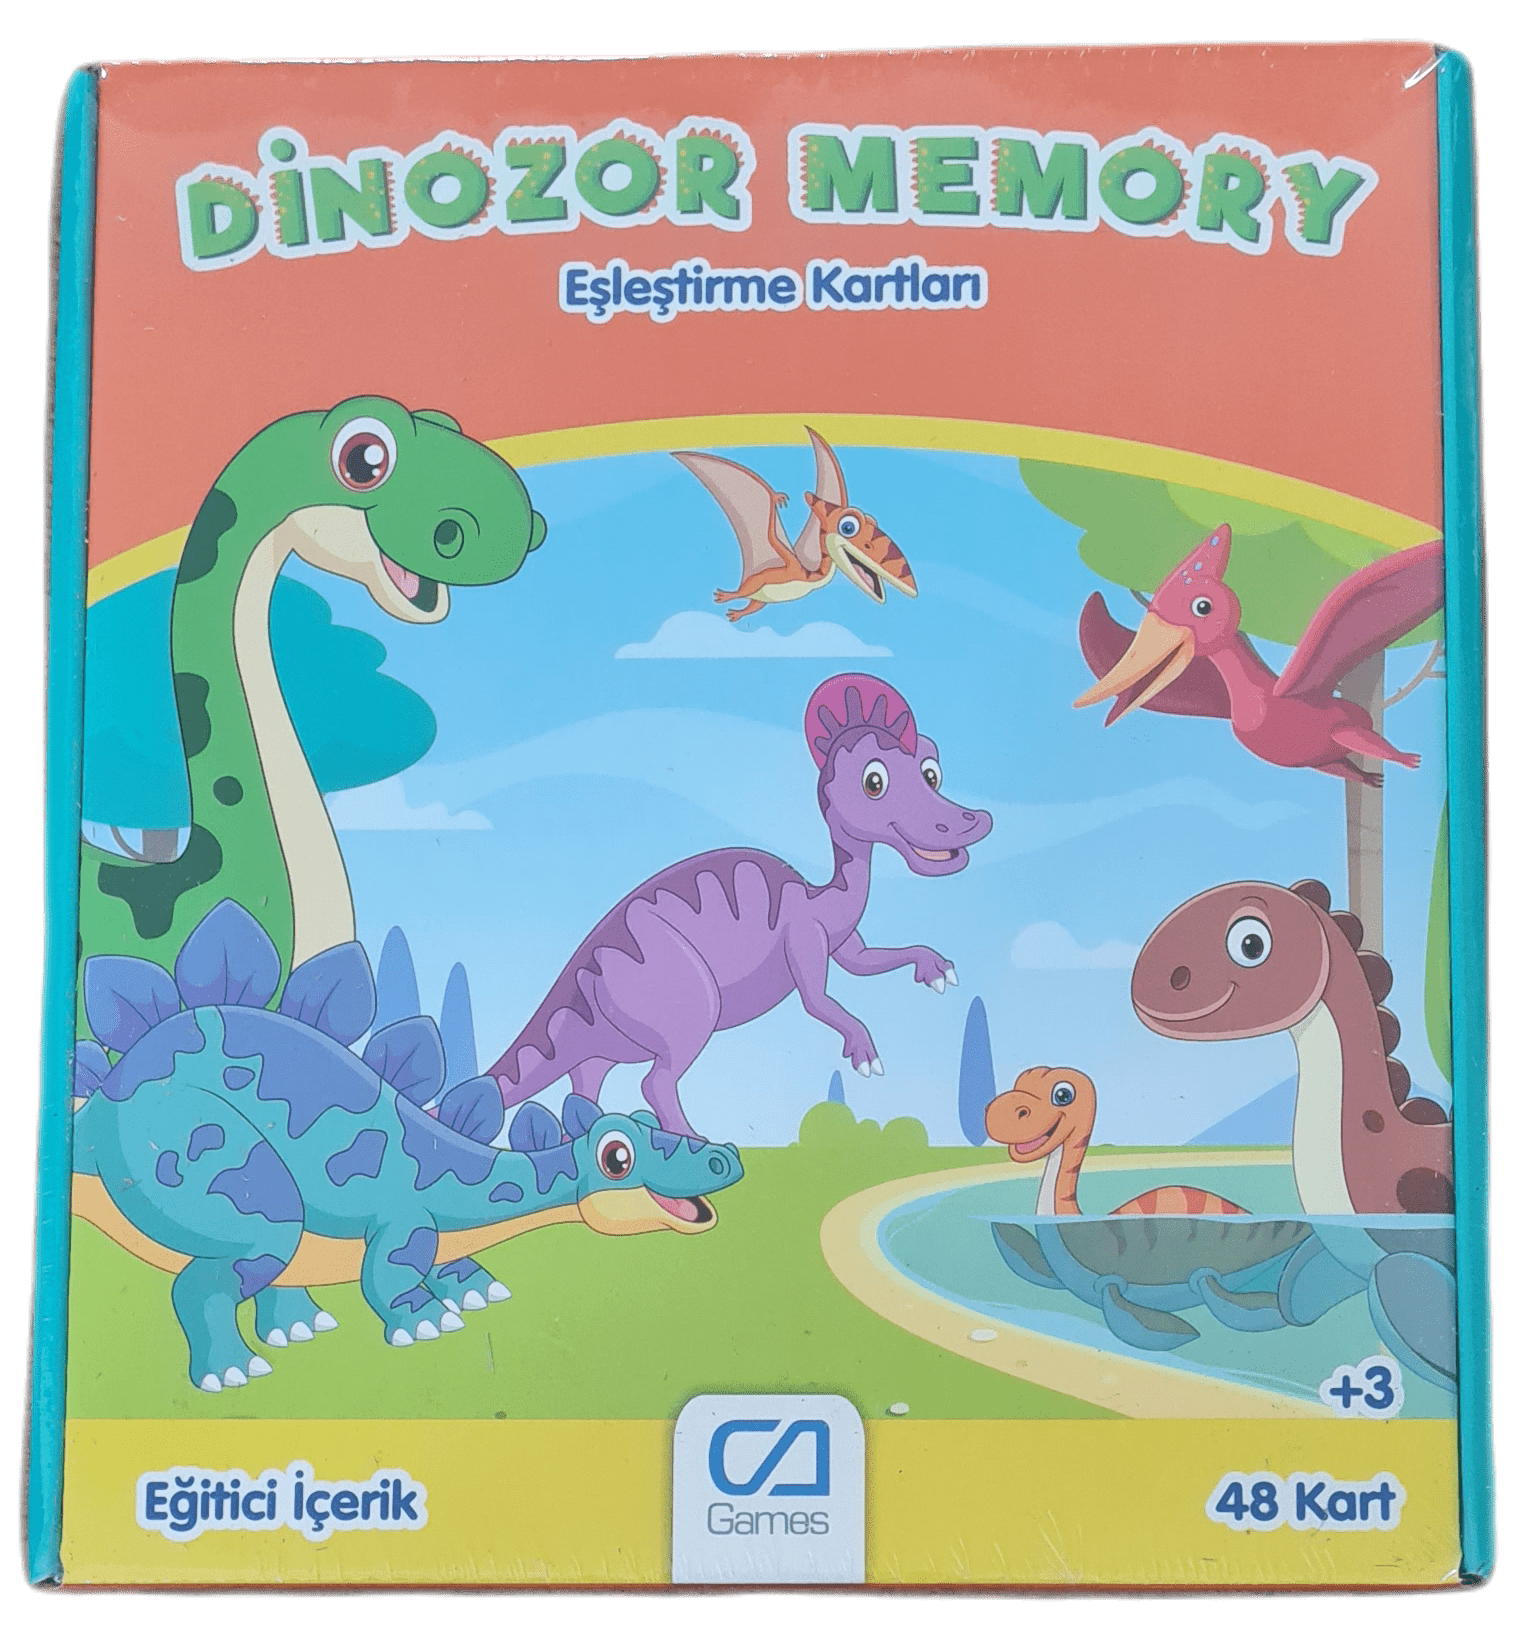 CA Games Dinozor Memory Eşleştirme Kartları